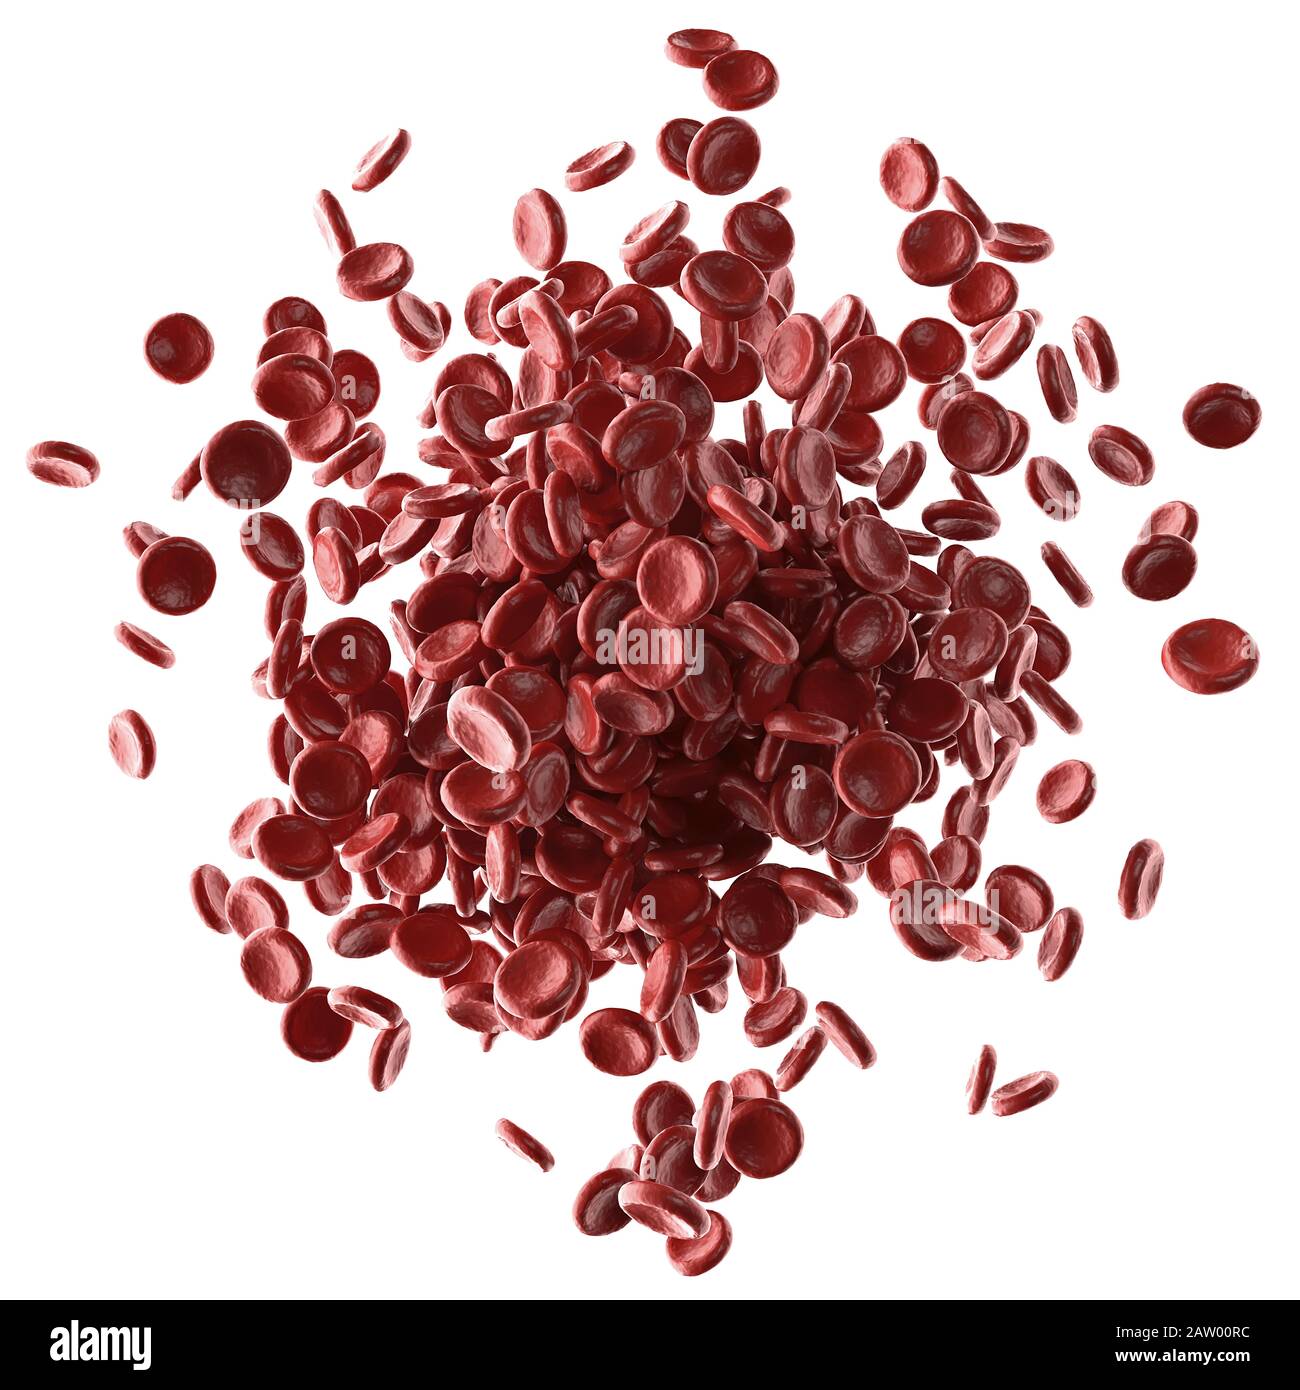 Les globules rouges débordent sur fond blanc. Illustration tridimensionnelle, image conceptuelle. Chemin d'écrêtage inclus. Banque D'Images